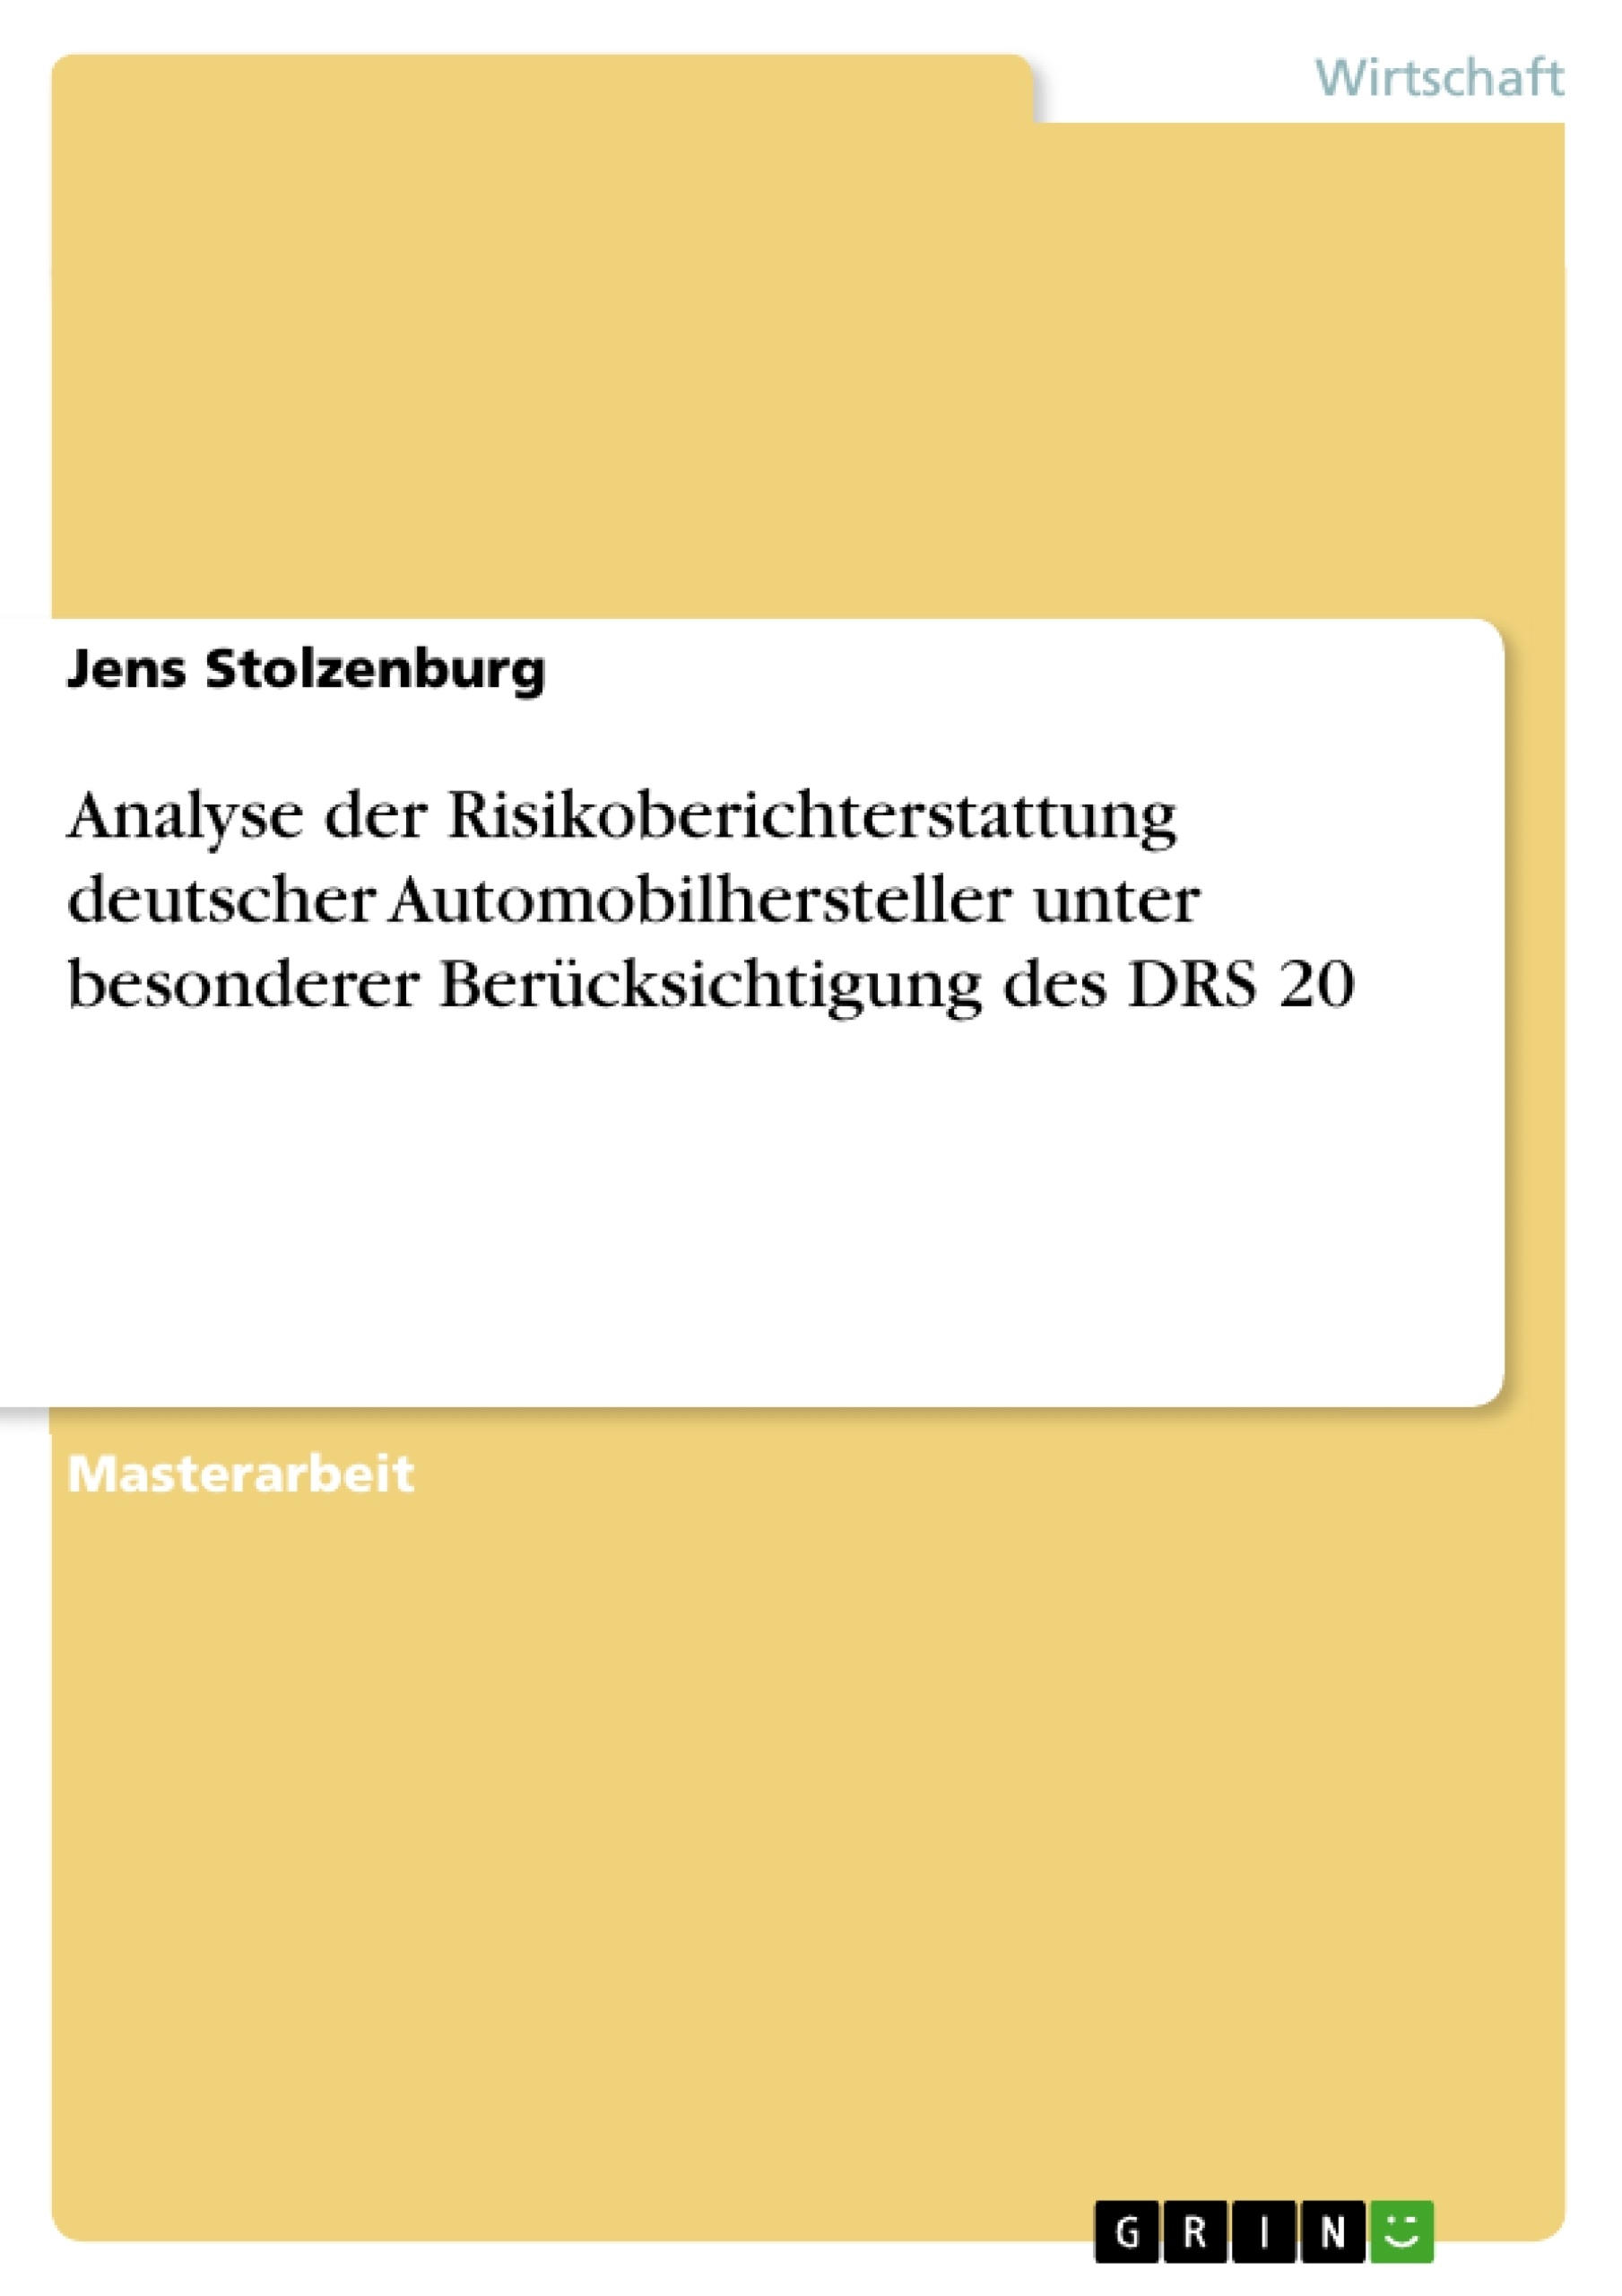 Titel: Analyse der Risikoberichterstattung deutscher Automobilhersteller unter besonderer Berücksichtigung des DRS 20